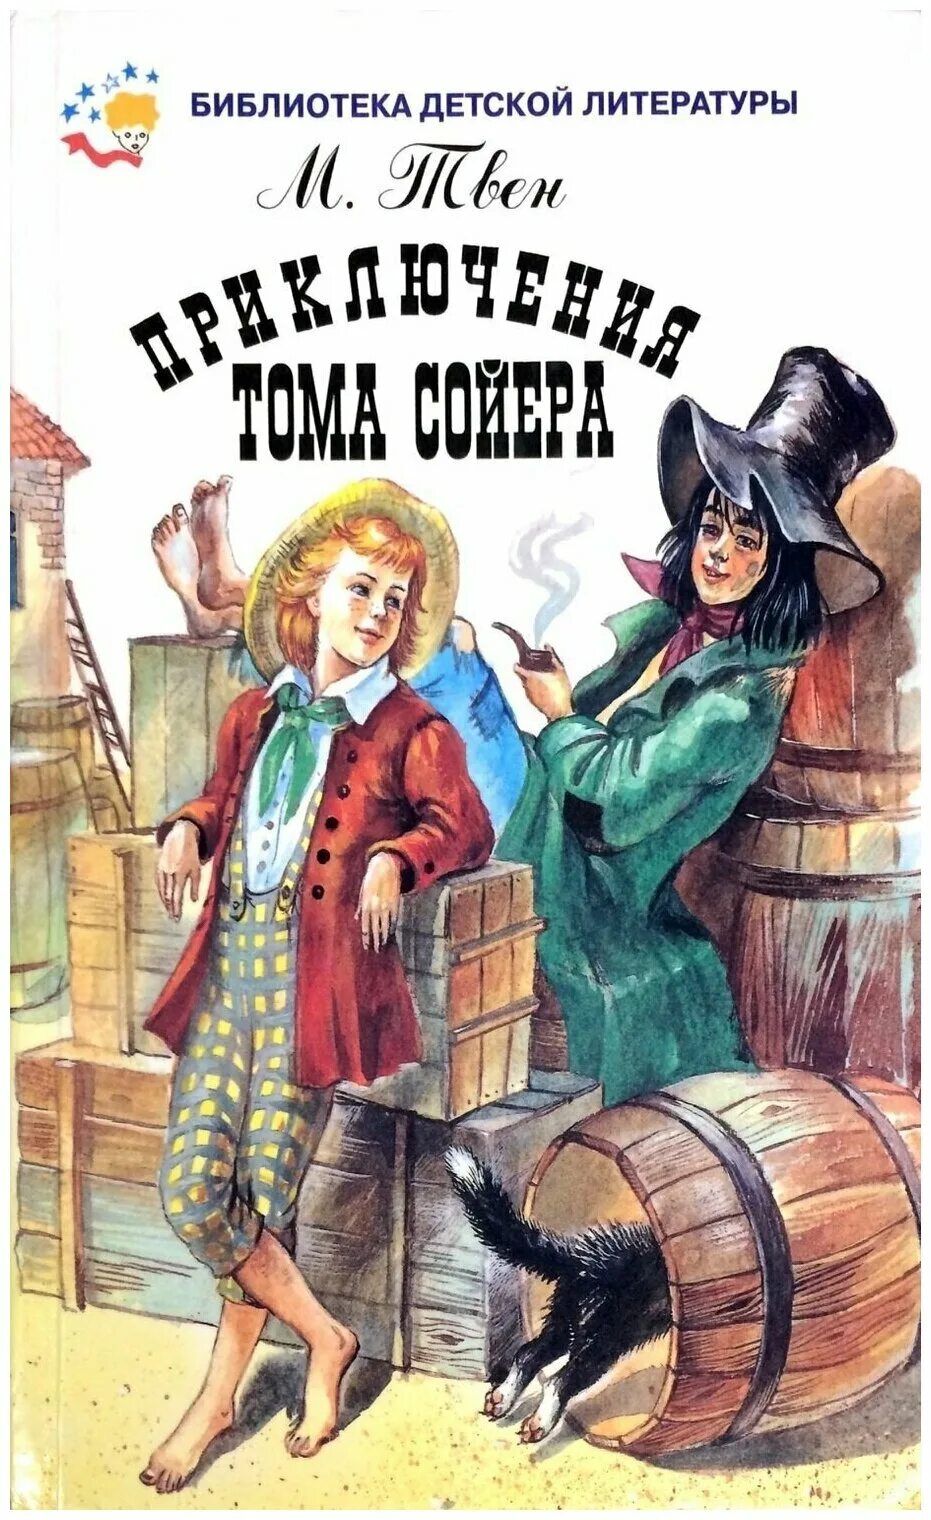 Книга тома сойера слушать. Твен том Сойер. Книга приключения Тома Сойера. Обложка книги марка Твена "приключения Тома Сойера".